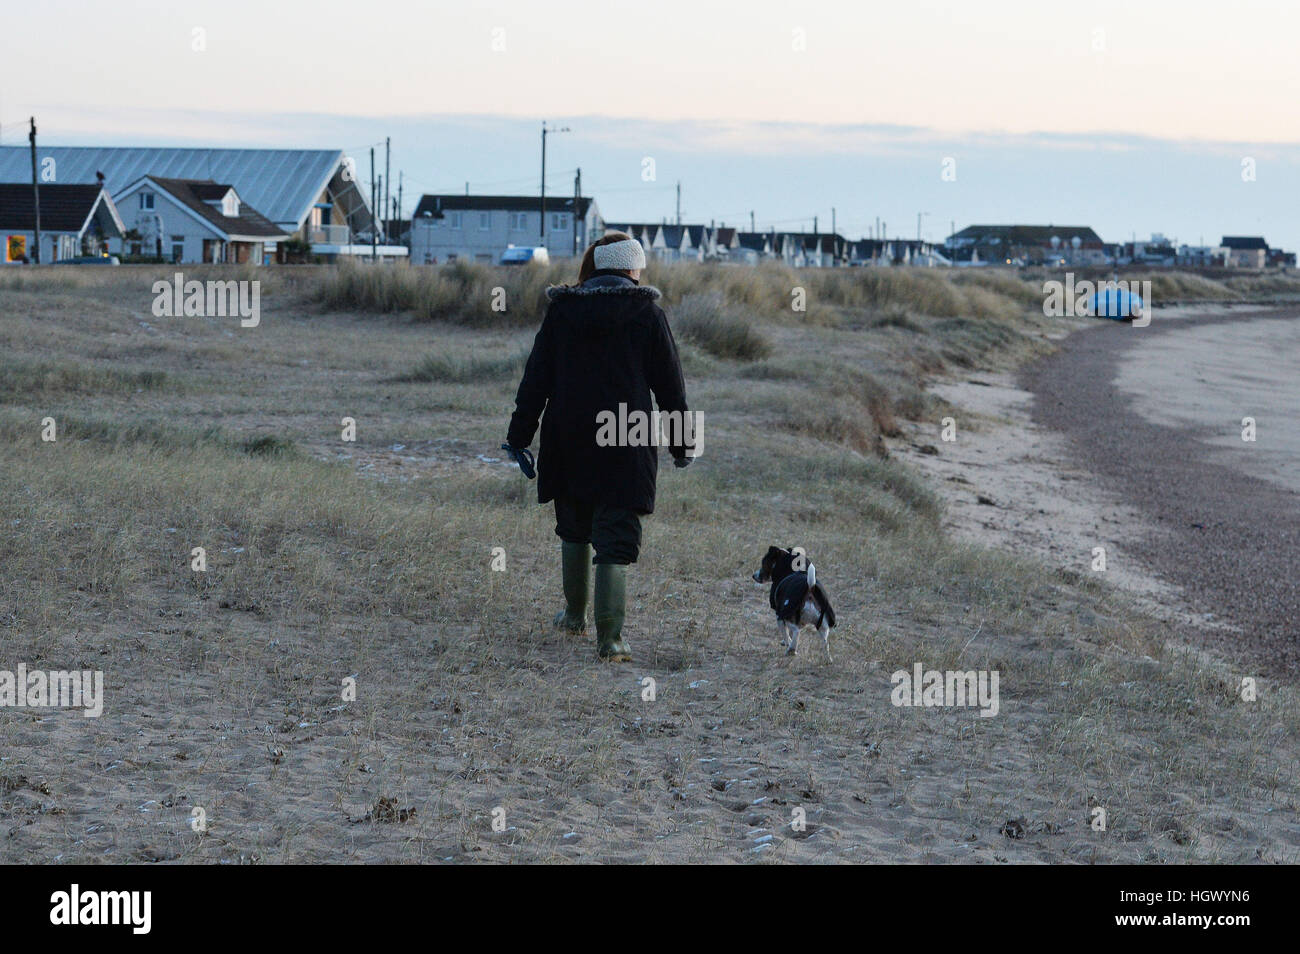 Un résident de son chien promenades sur la plage à Jaywick, Essex, d'où la police est l'évacuation de résidents au milieu les craintes d'inondations causées par un raz-de-marée plus tard cet après-midi. Banque D'Images